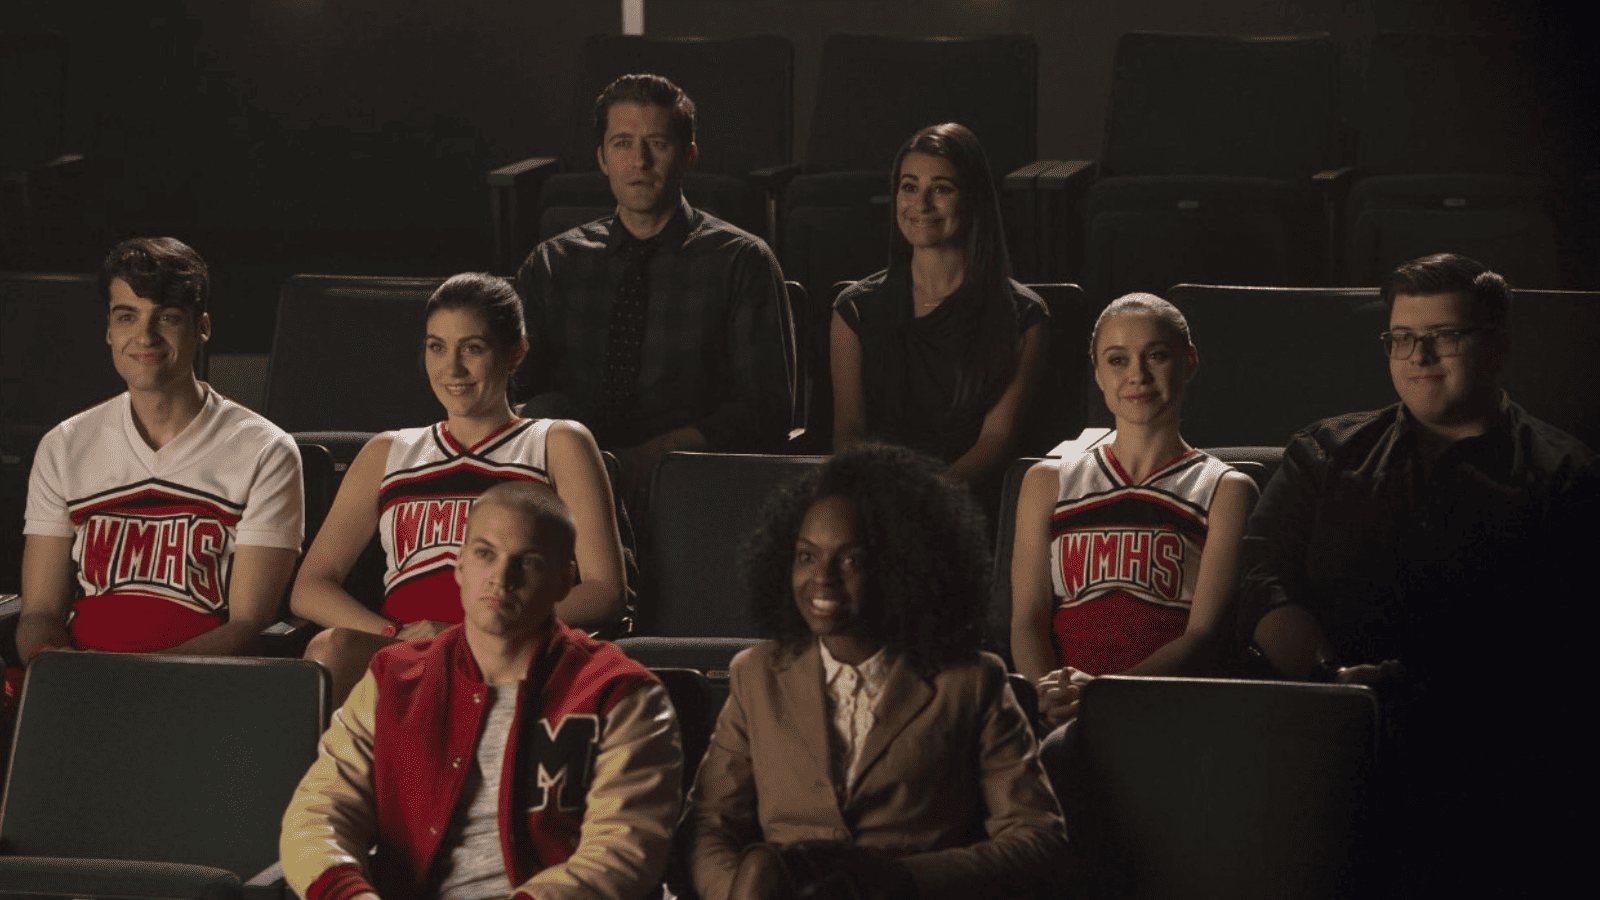 Scene from Glee